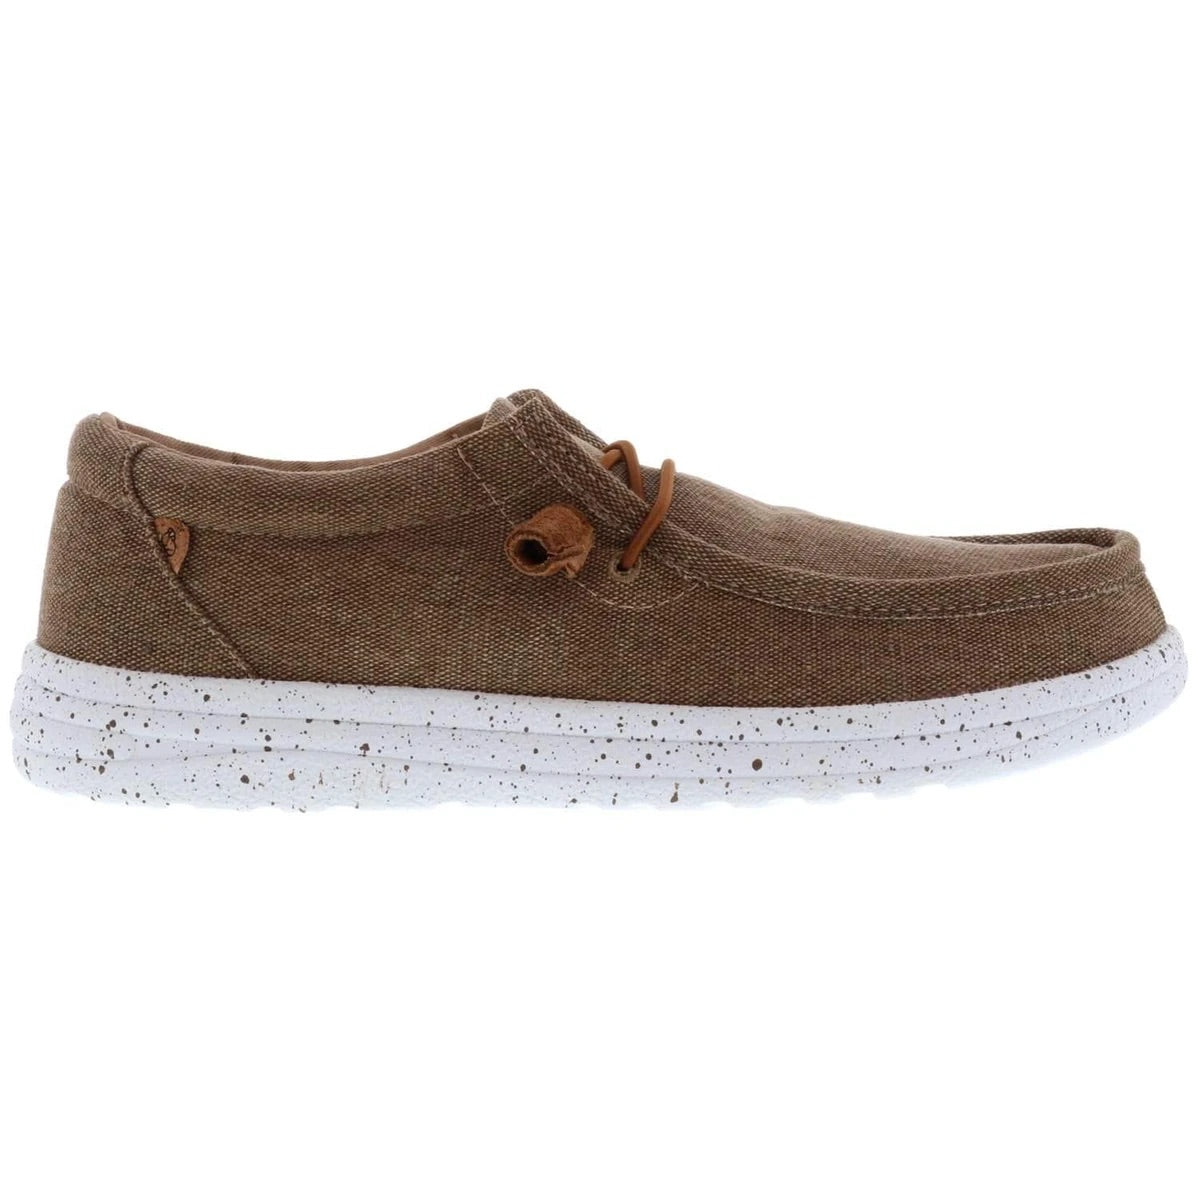 Lamo Footwear Khaki “Paul” - All Mixed Up 